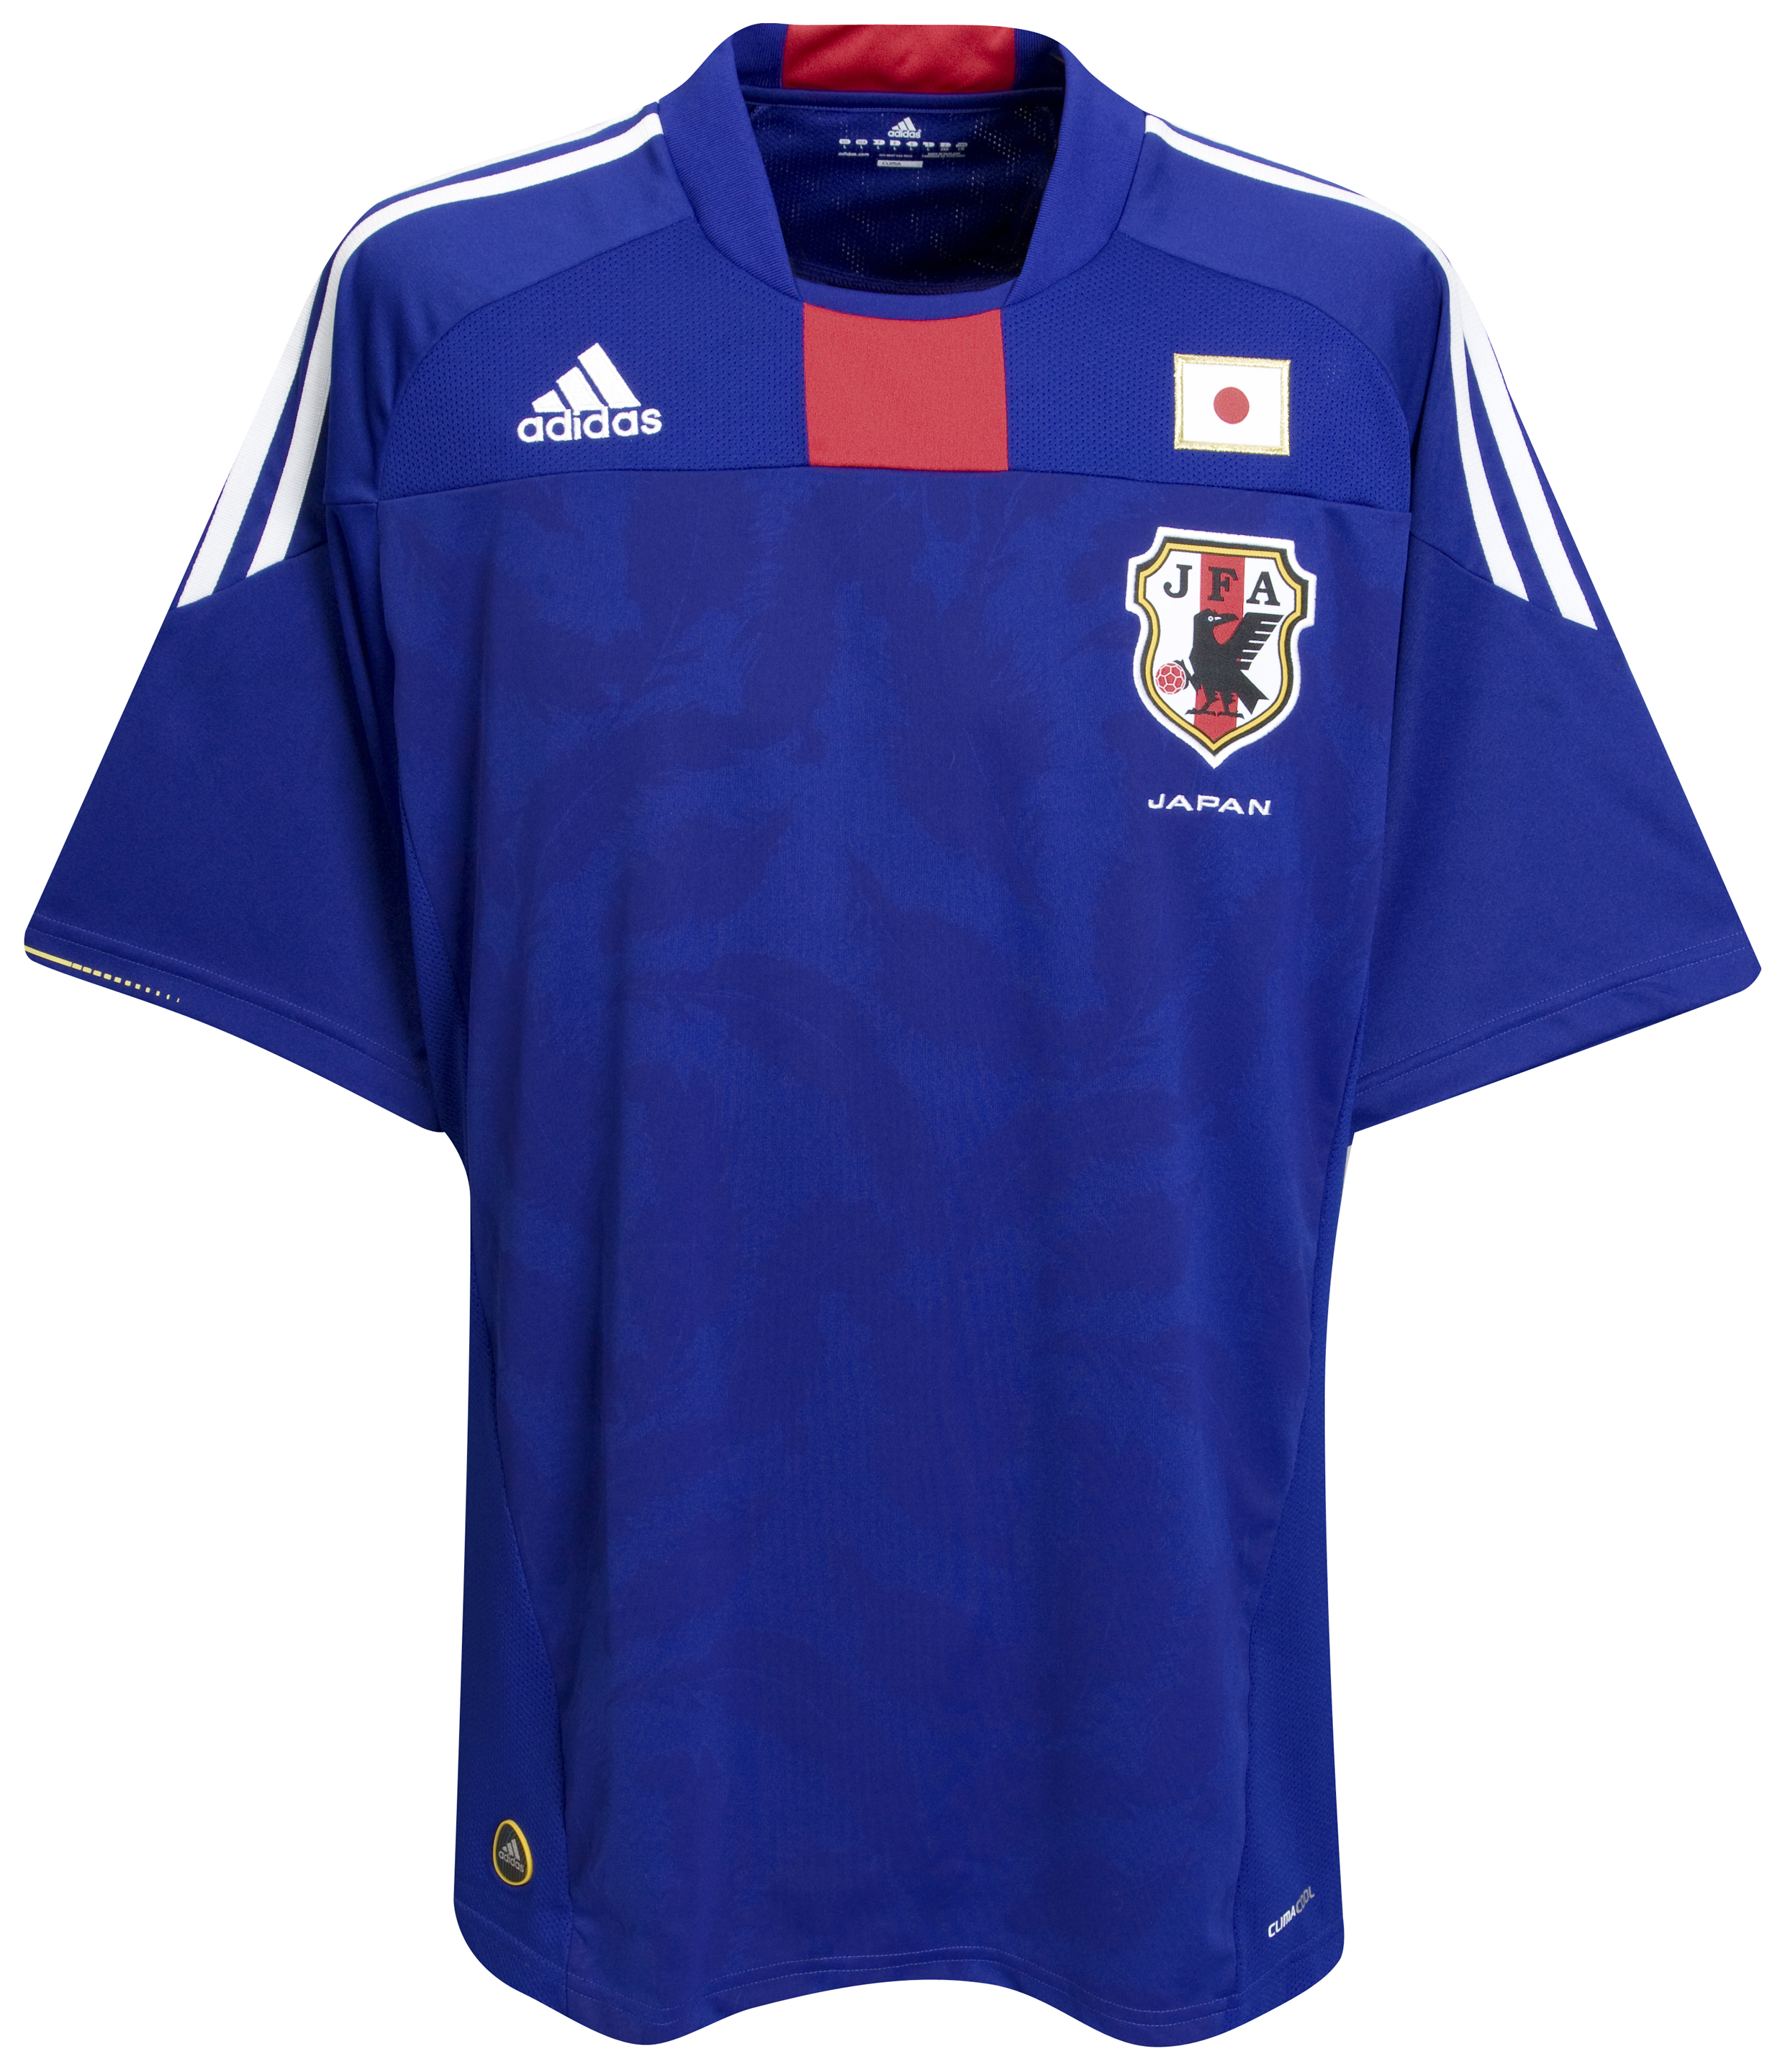 الملابس الخاصة بالمنتخبات في كأس العالم (جنوب أفريقيا 2010) Kb-63744